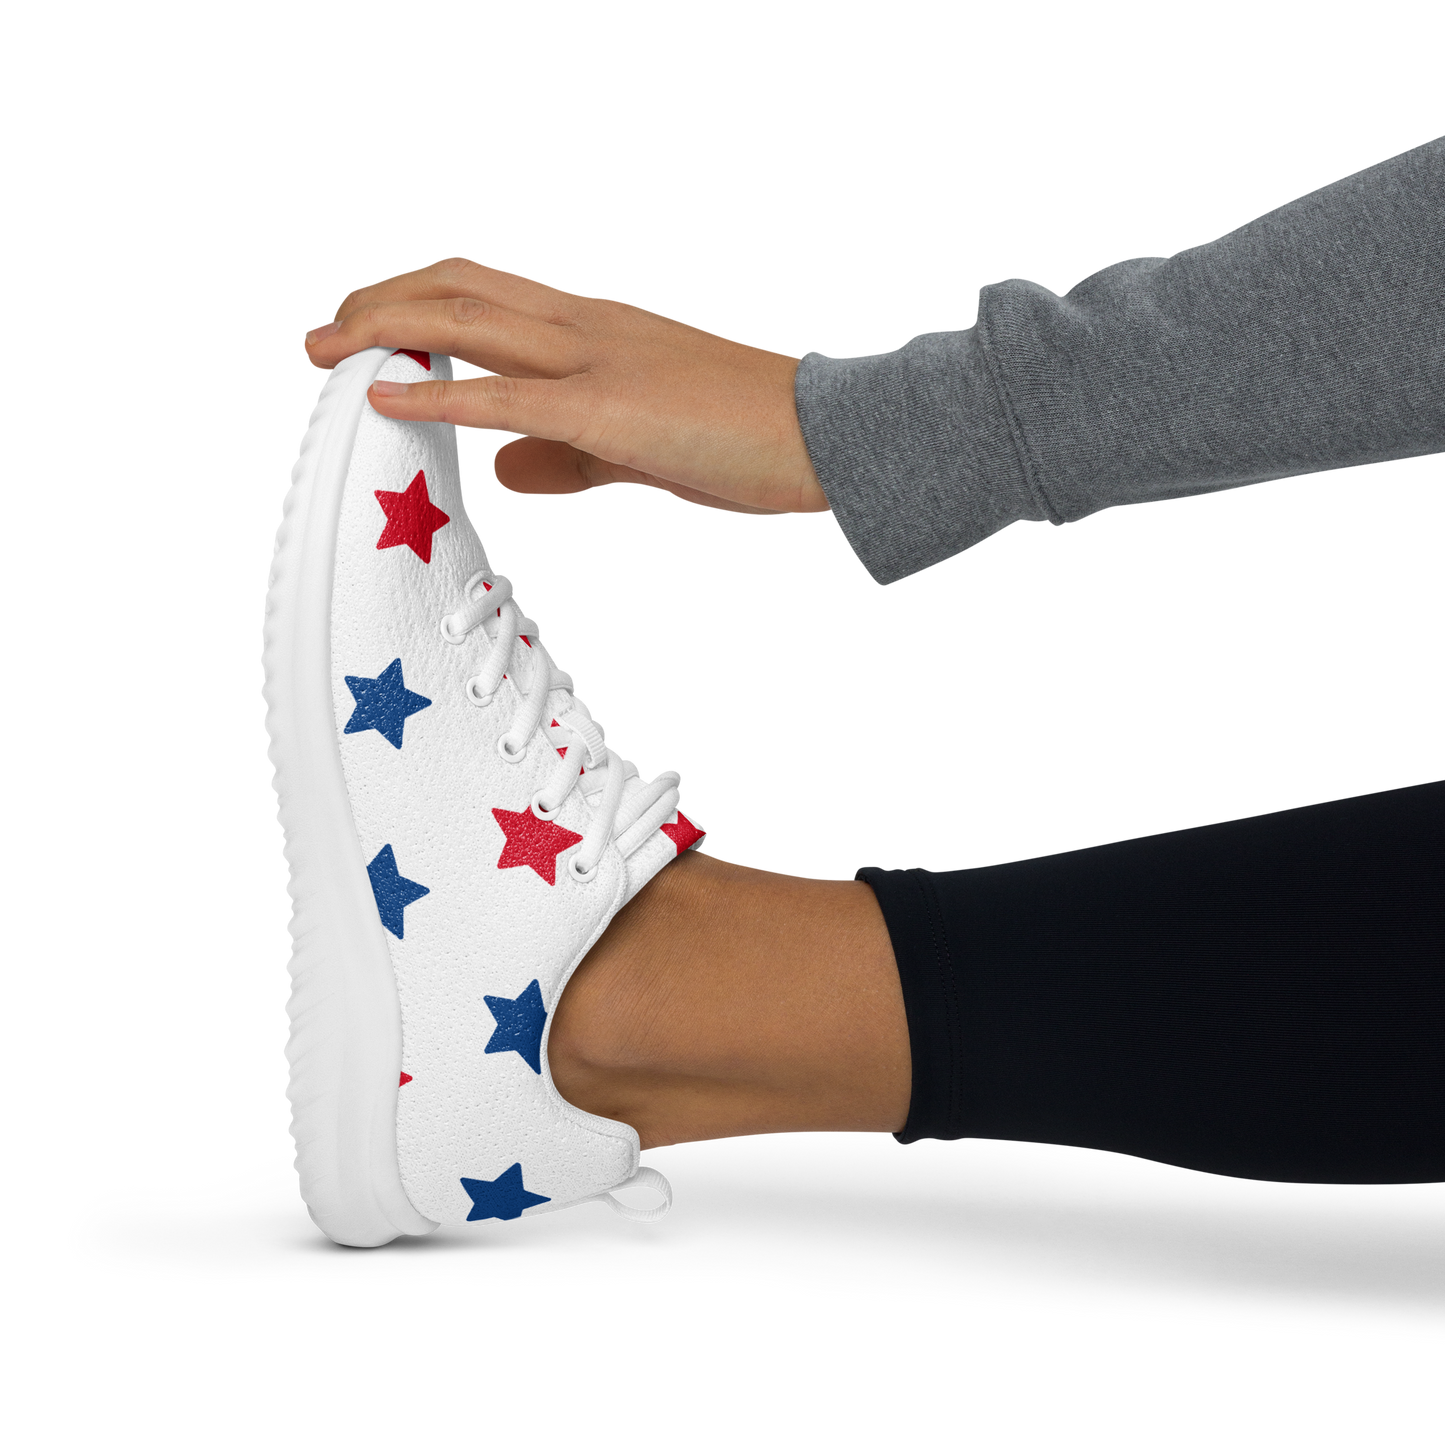 Women's Patriotic Sneakers